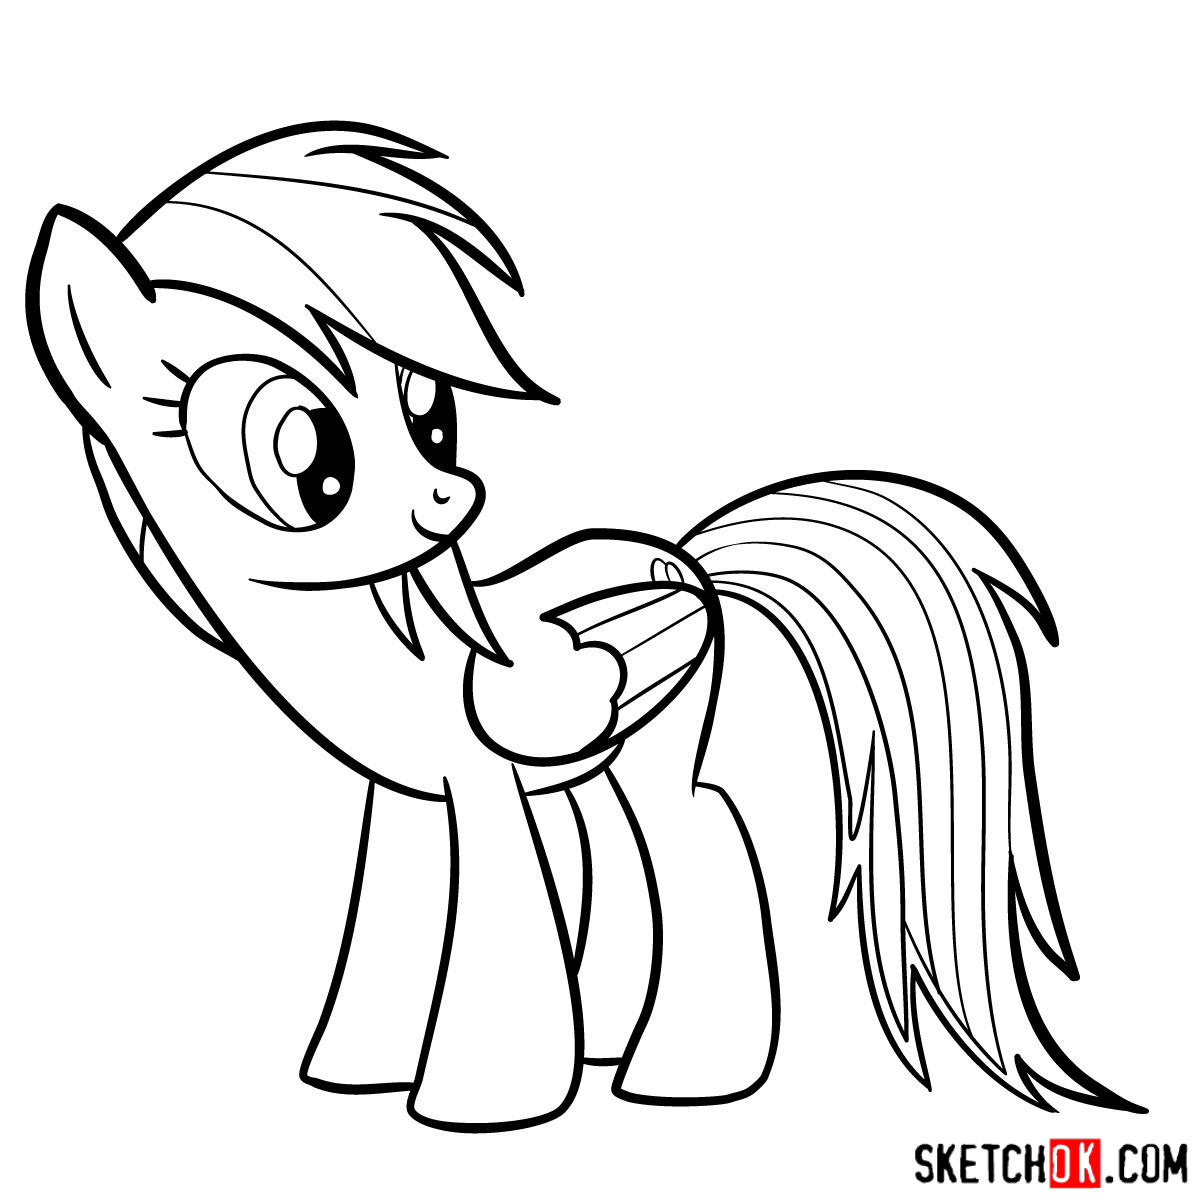 How to draw Rainbow Dash pony - step 13